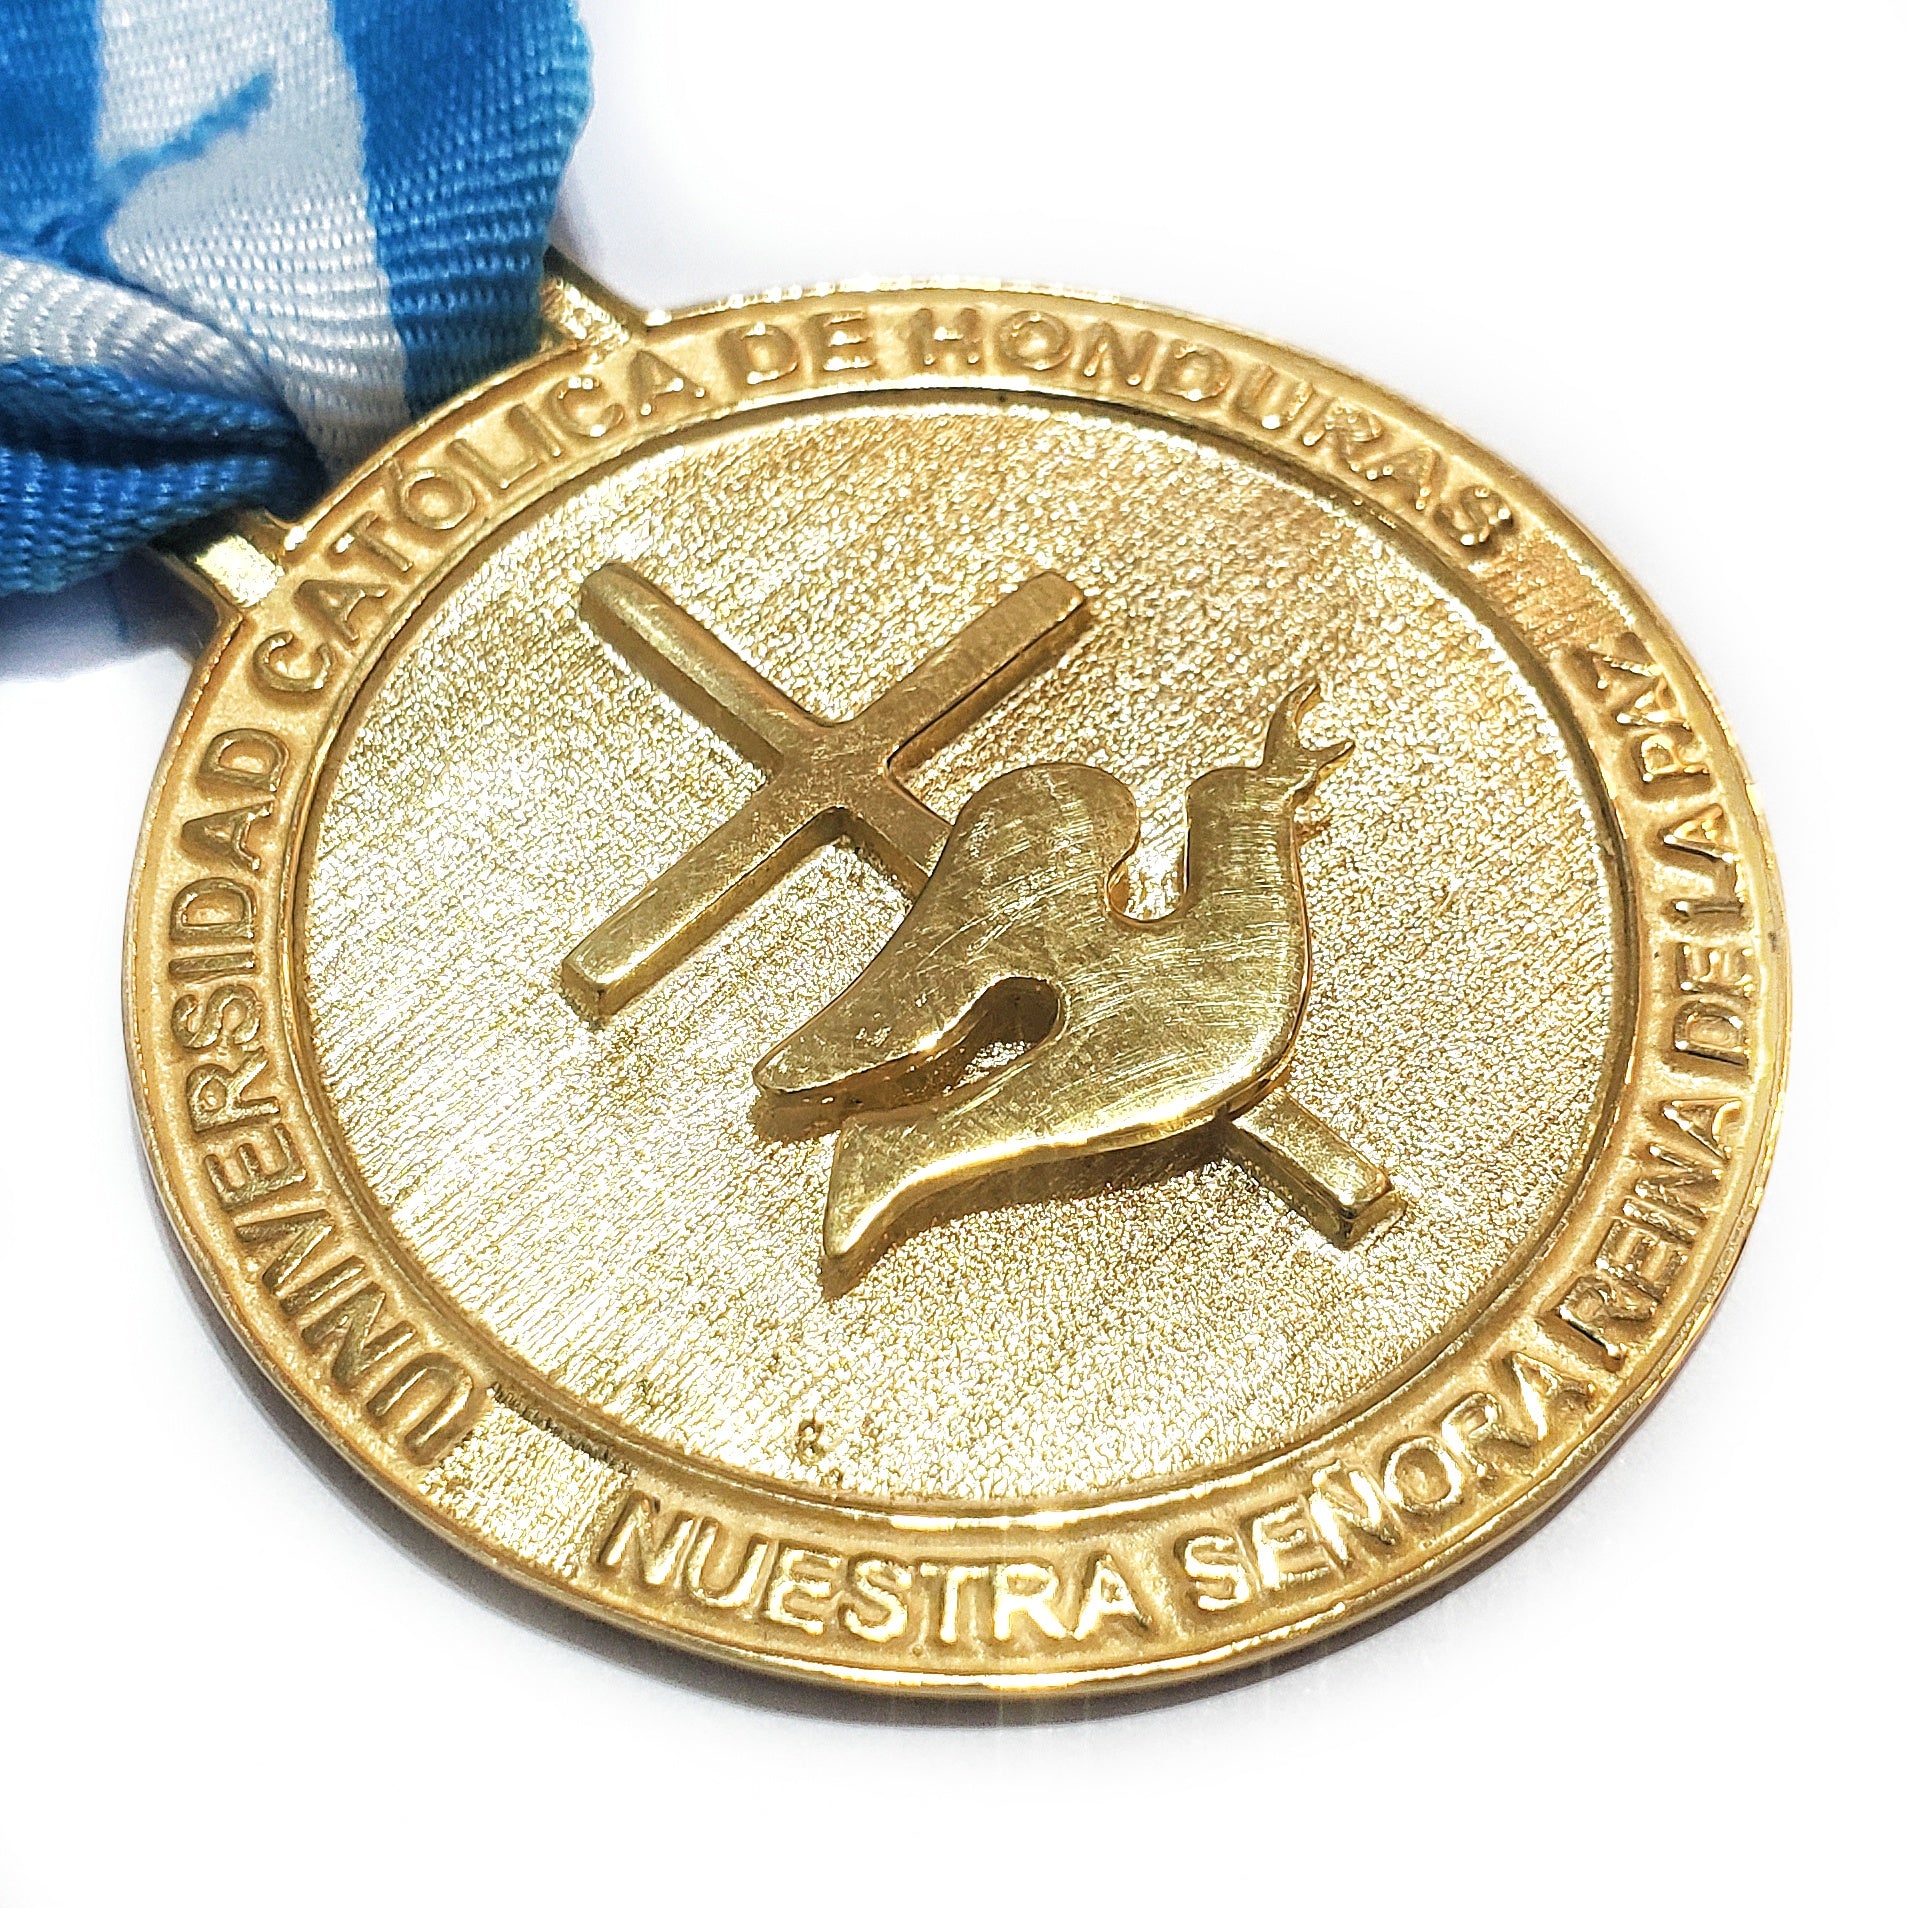 Honduran medals, universidad catolica de honduras